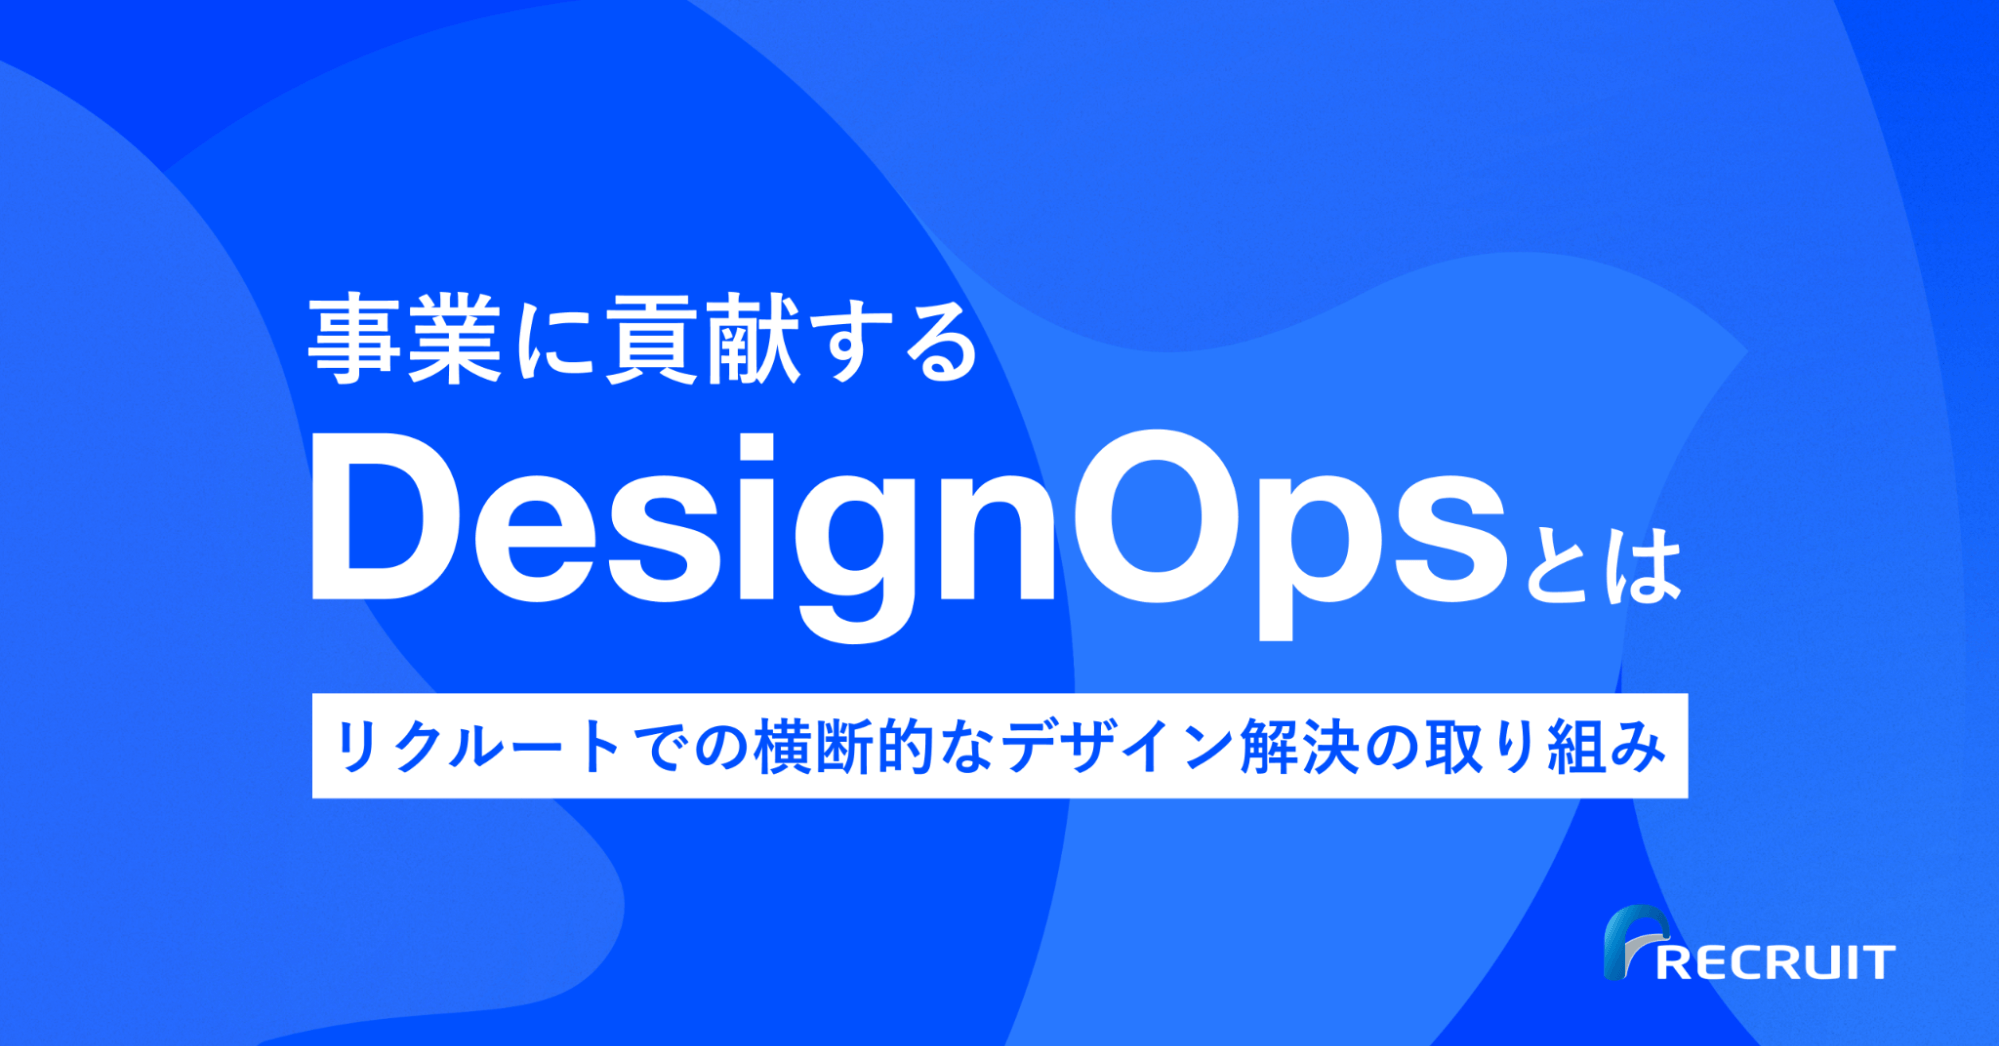 事業に貢献する「DesignOps」とは。リクルートでの横断的なデザイン課題解決の取り組みのサムネイル画像